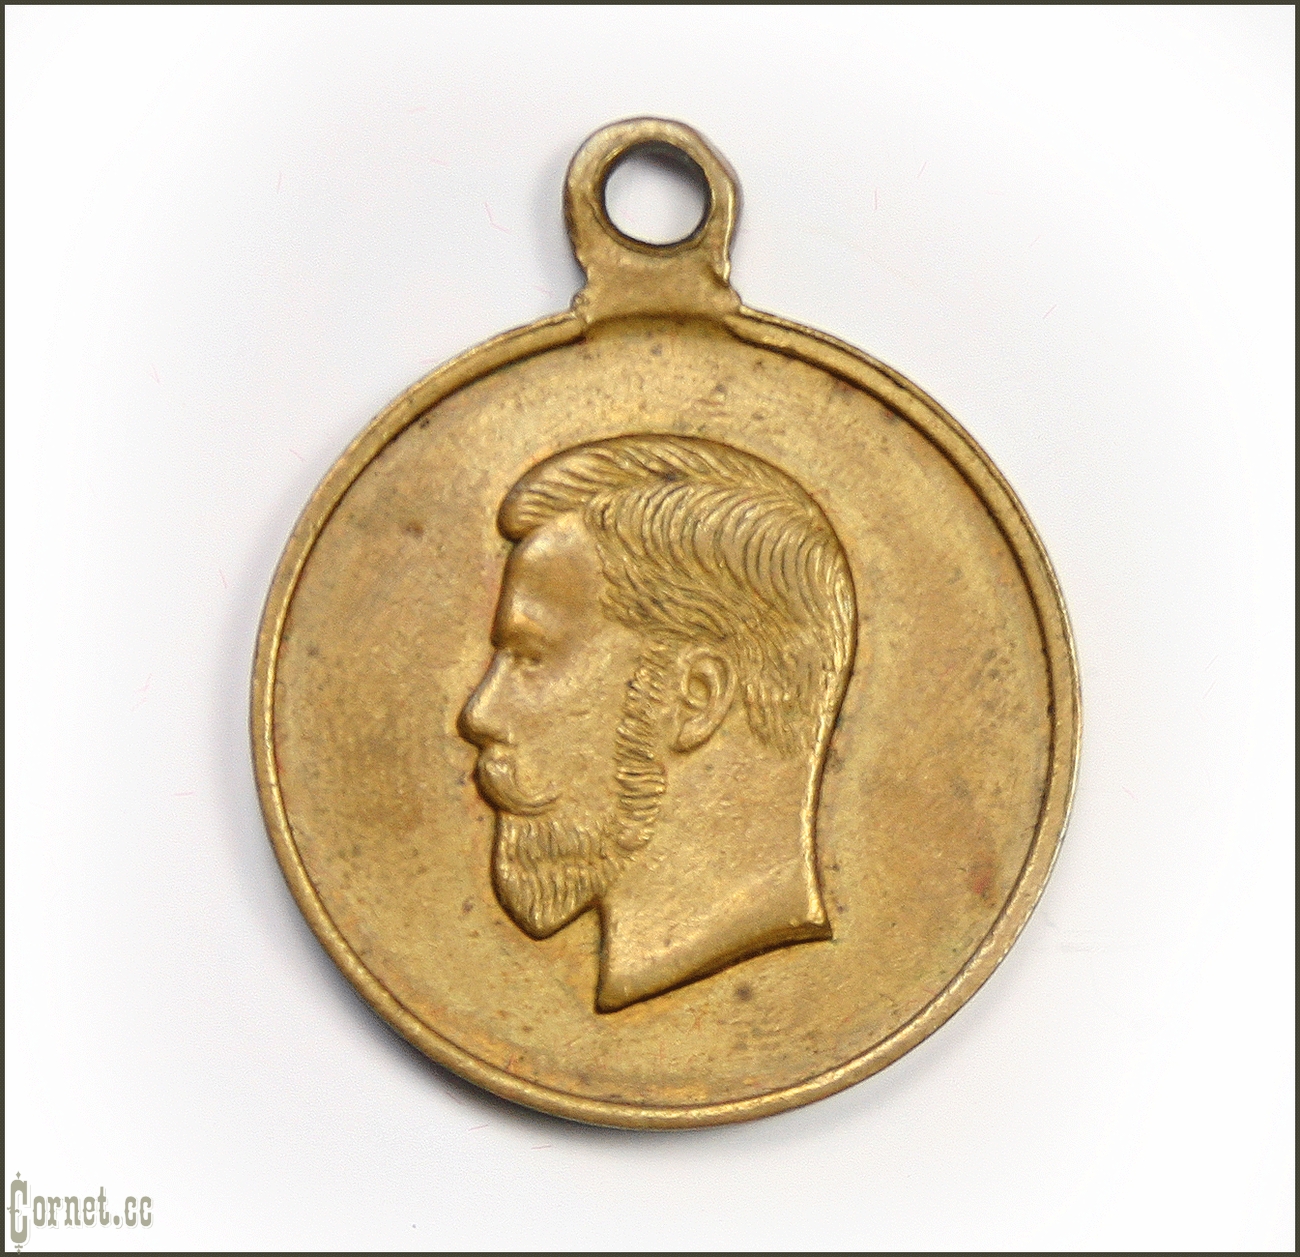 Медаль "За труды по отличному выполнению всеобщей мобилизации 1914 года"